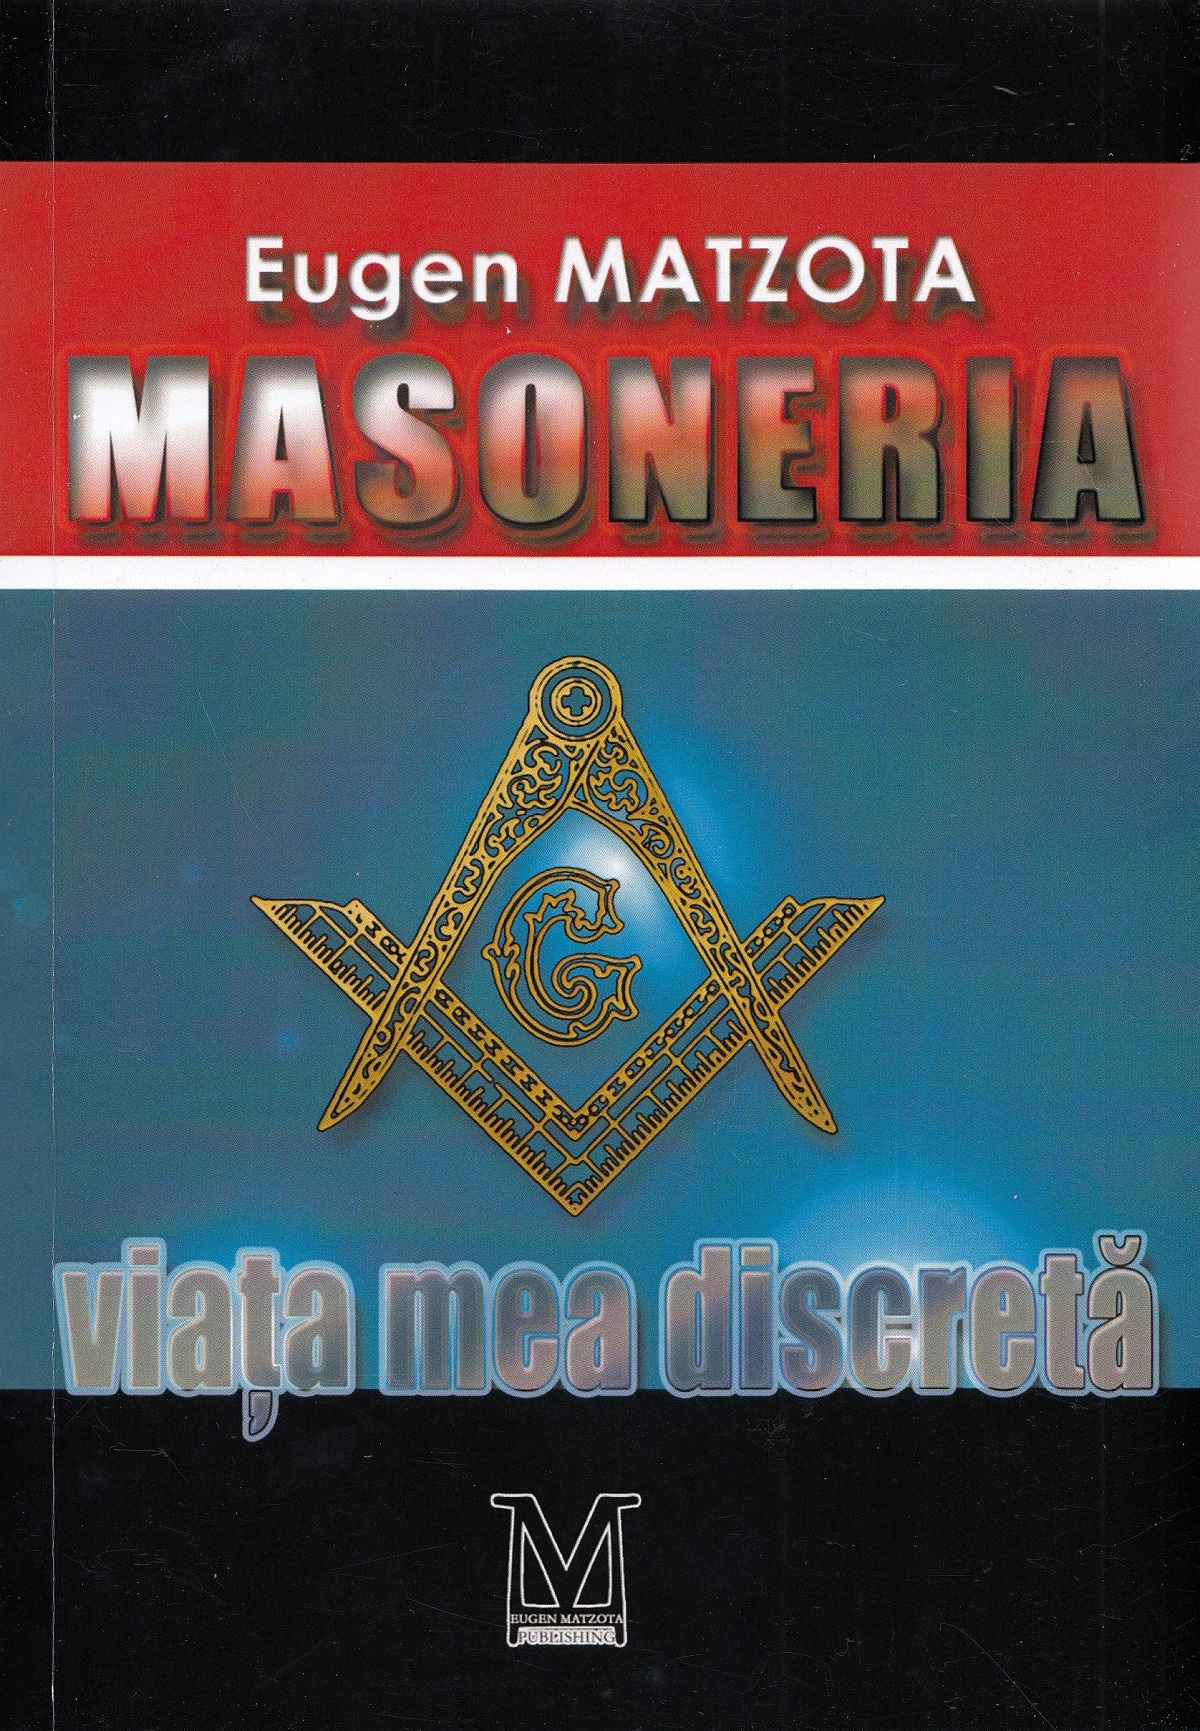 Masoneria, viata mea discreta - Eugen Matzota